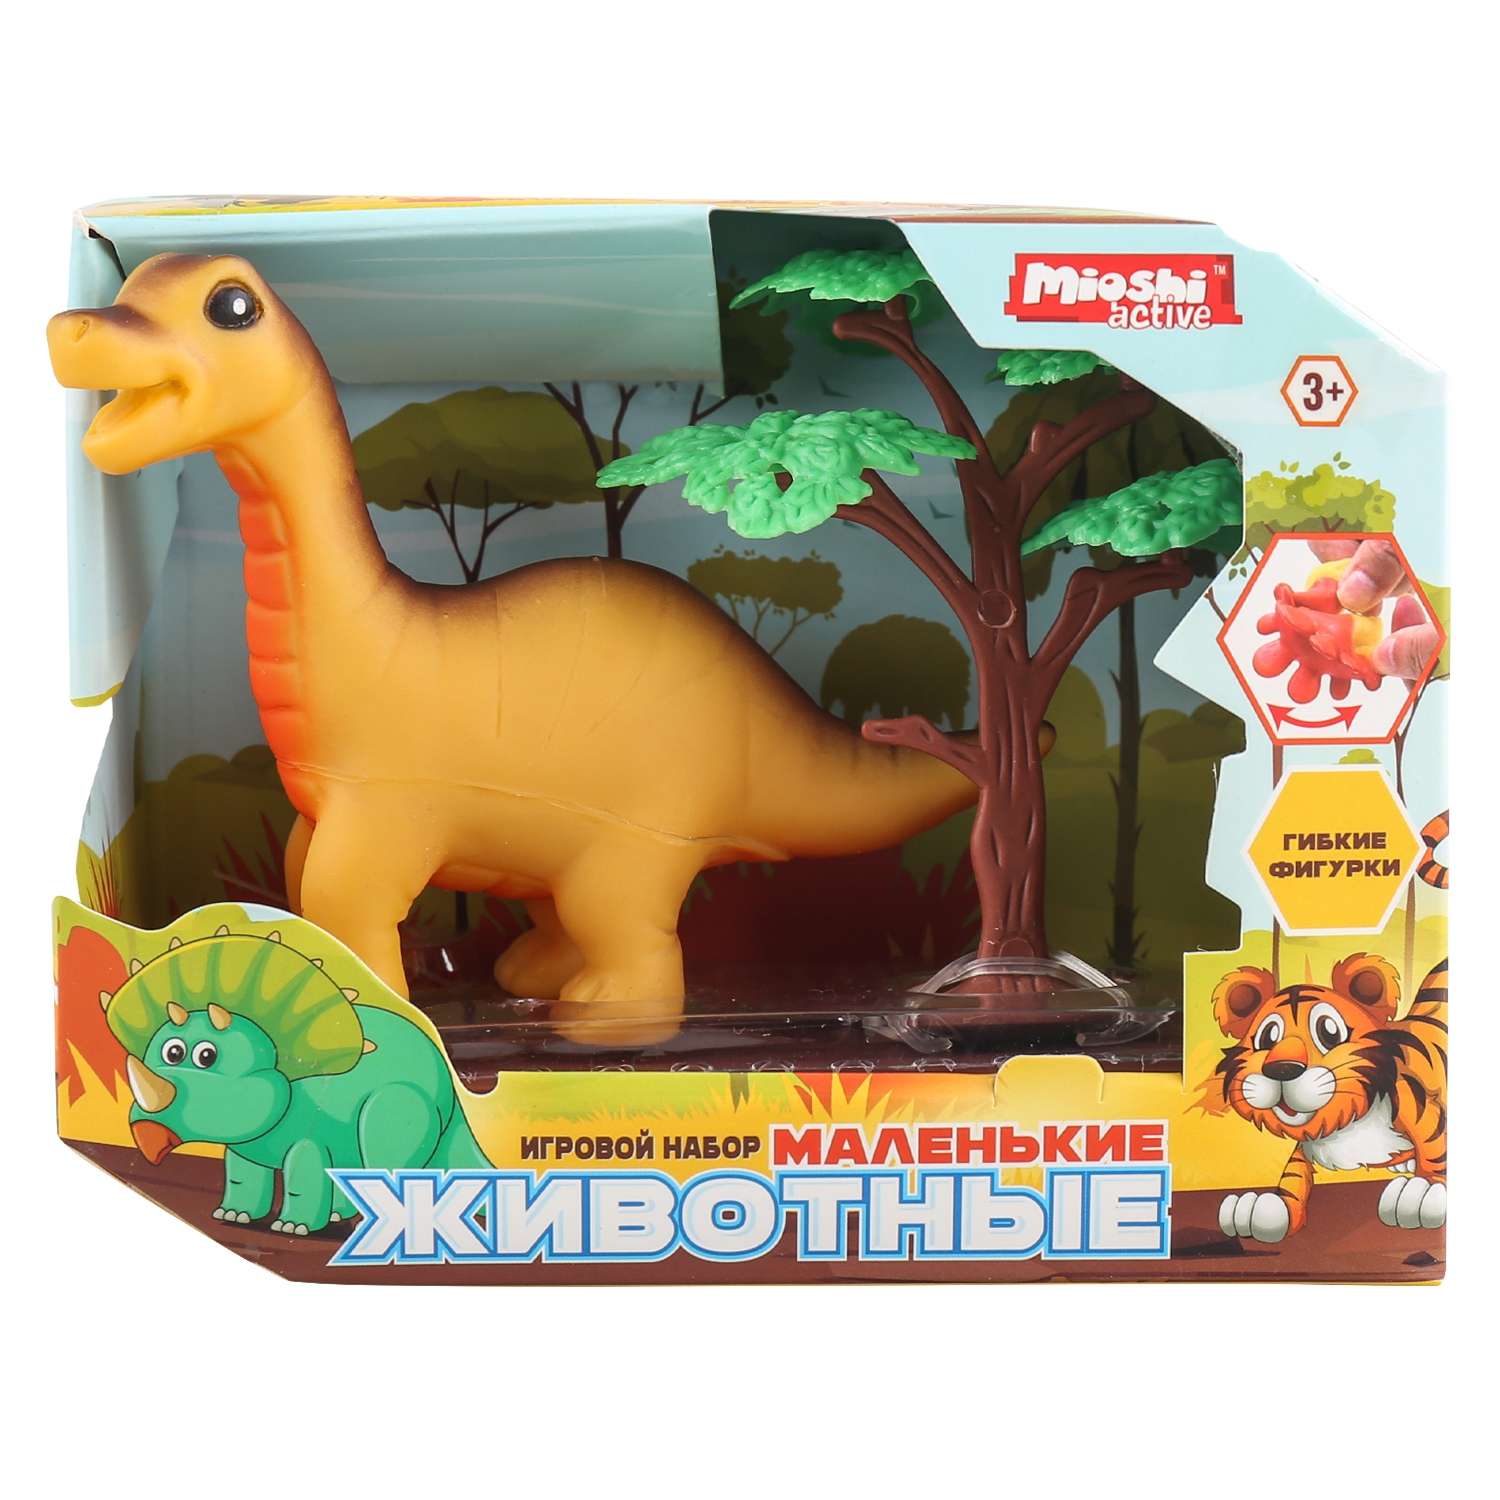 Игровой набор Mioshi Маленькие звери: Брахиозавр 11х9 см дерево - фото 1